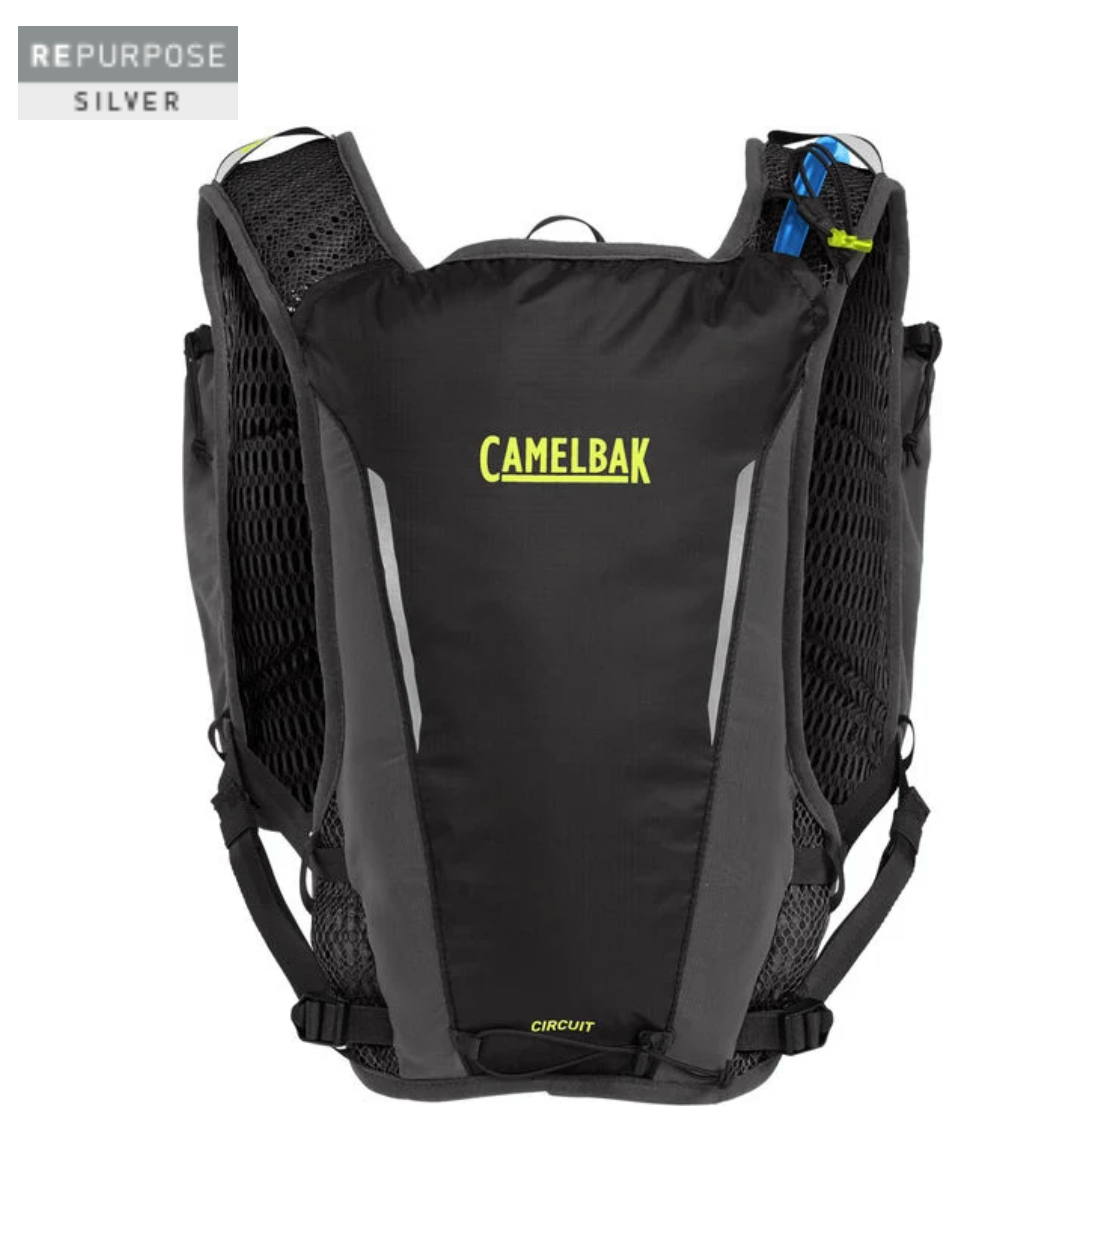 CamelBak Circuit Run Vest with Crux 1.5L Reservoir - 2824001000